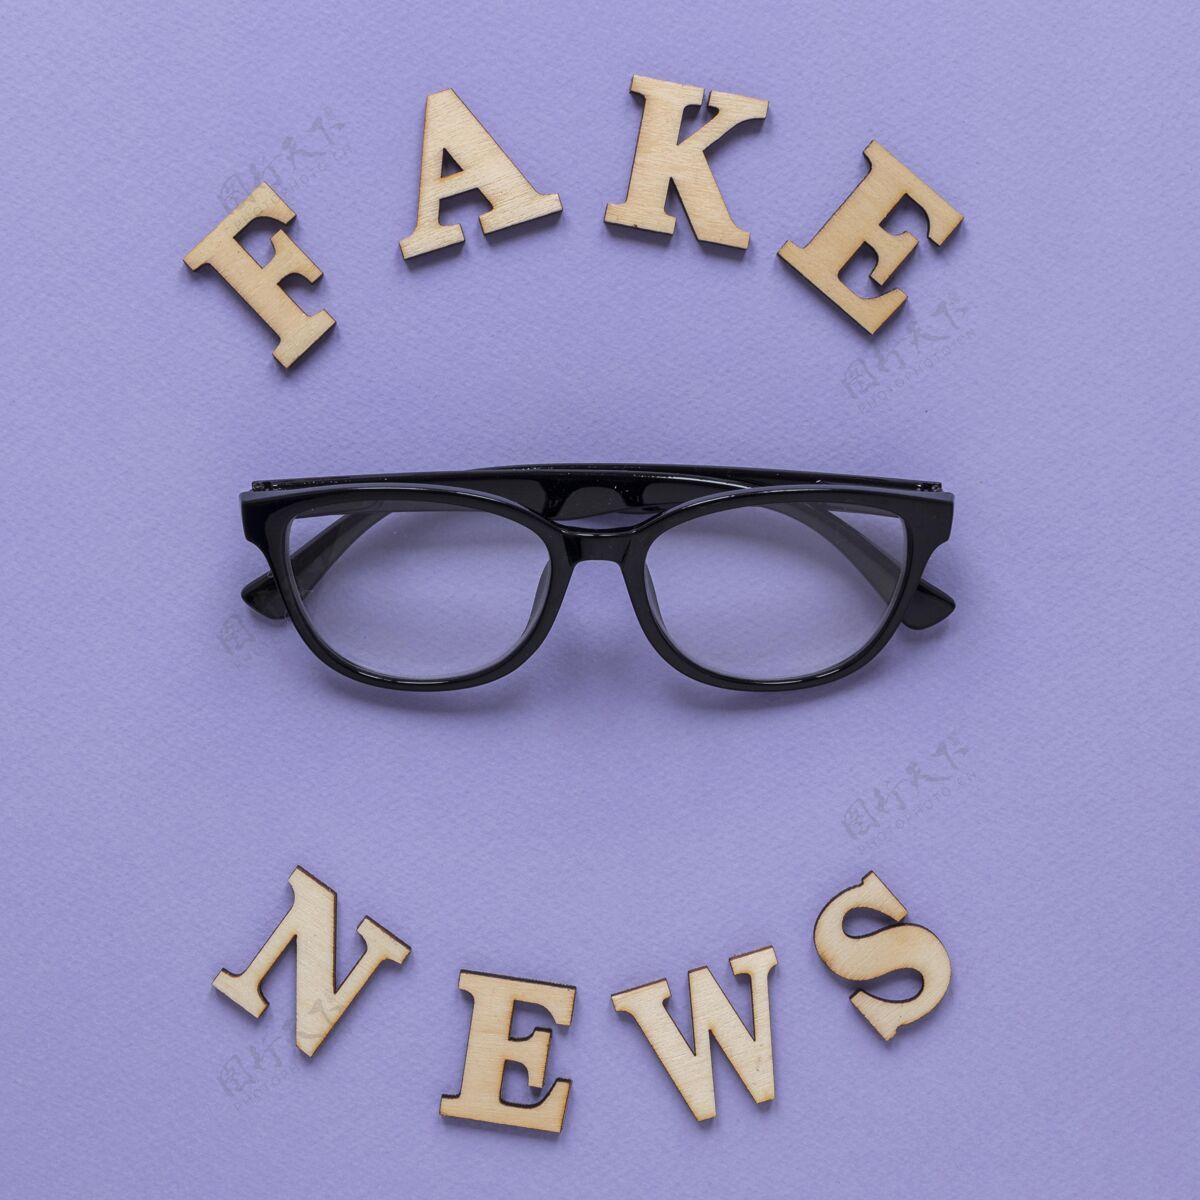 平面布局戴眼镜的假新闻词顶视图信息谎言